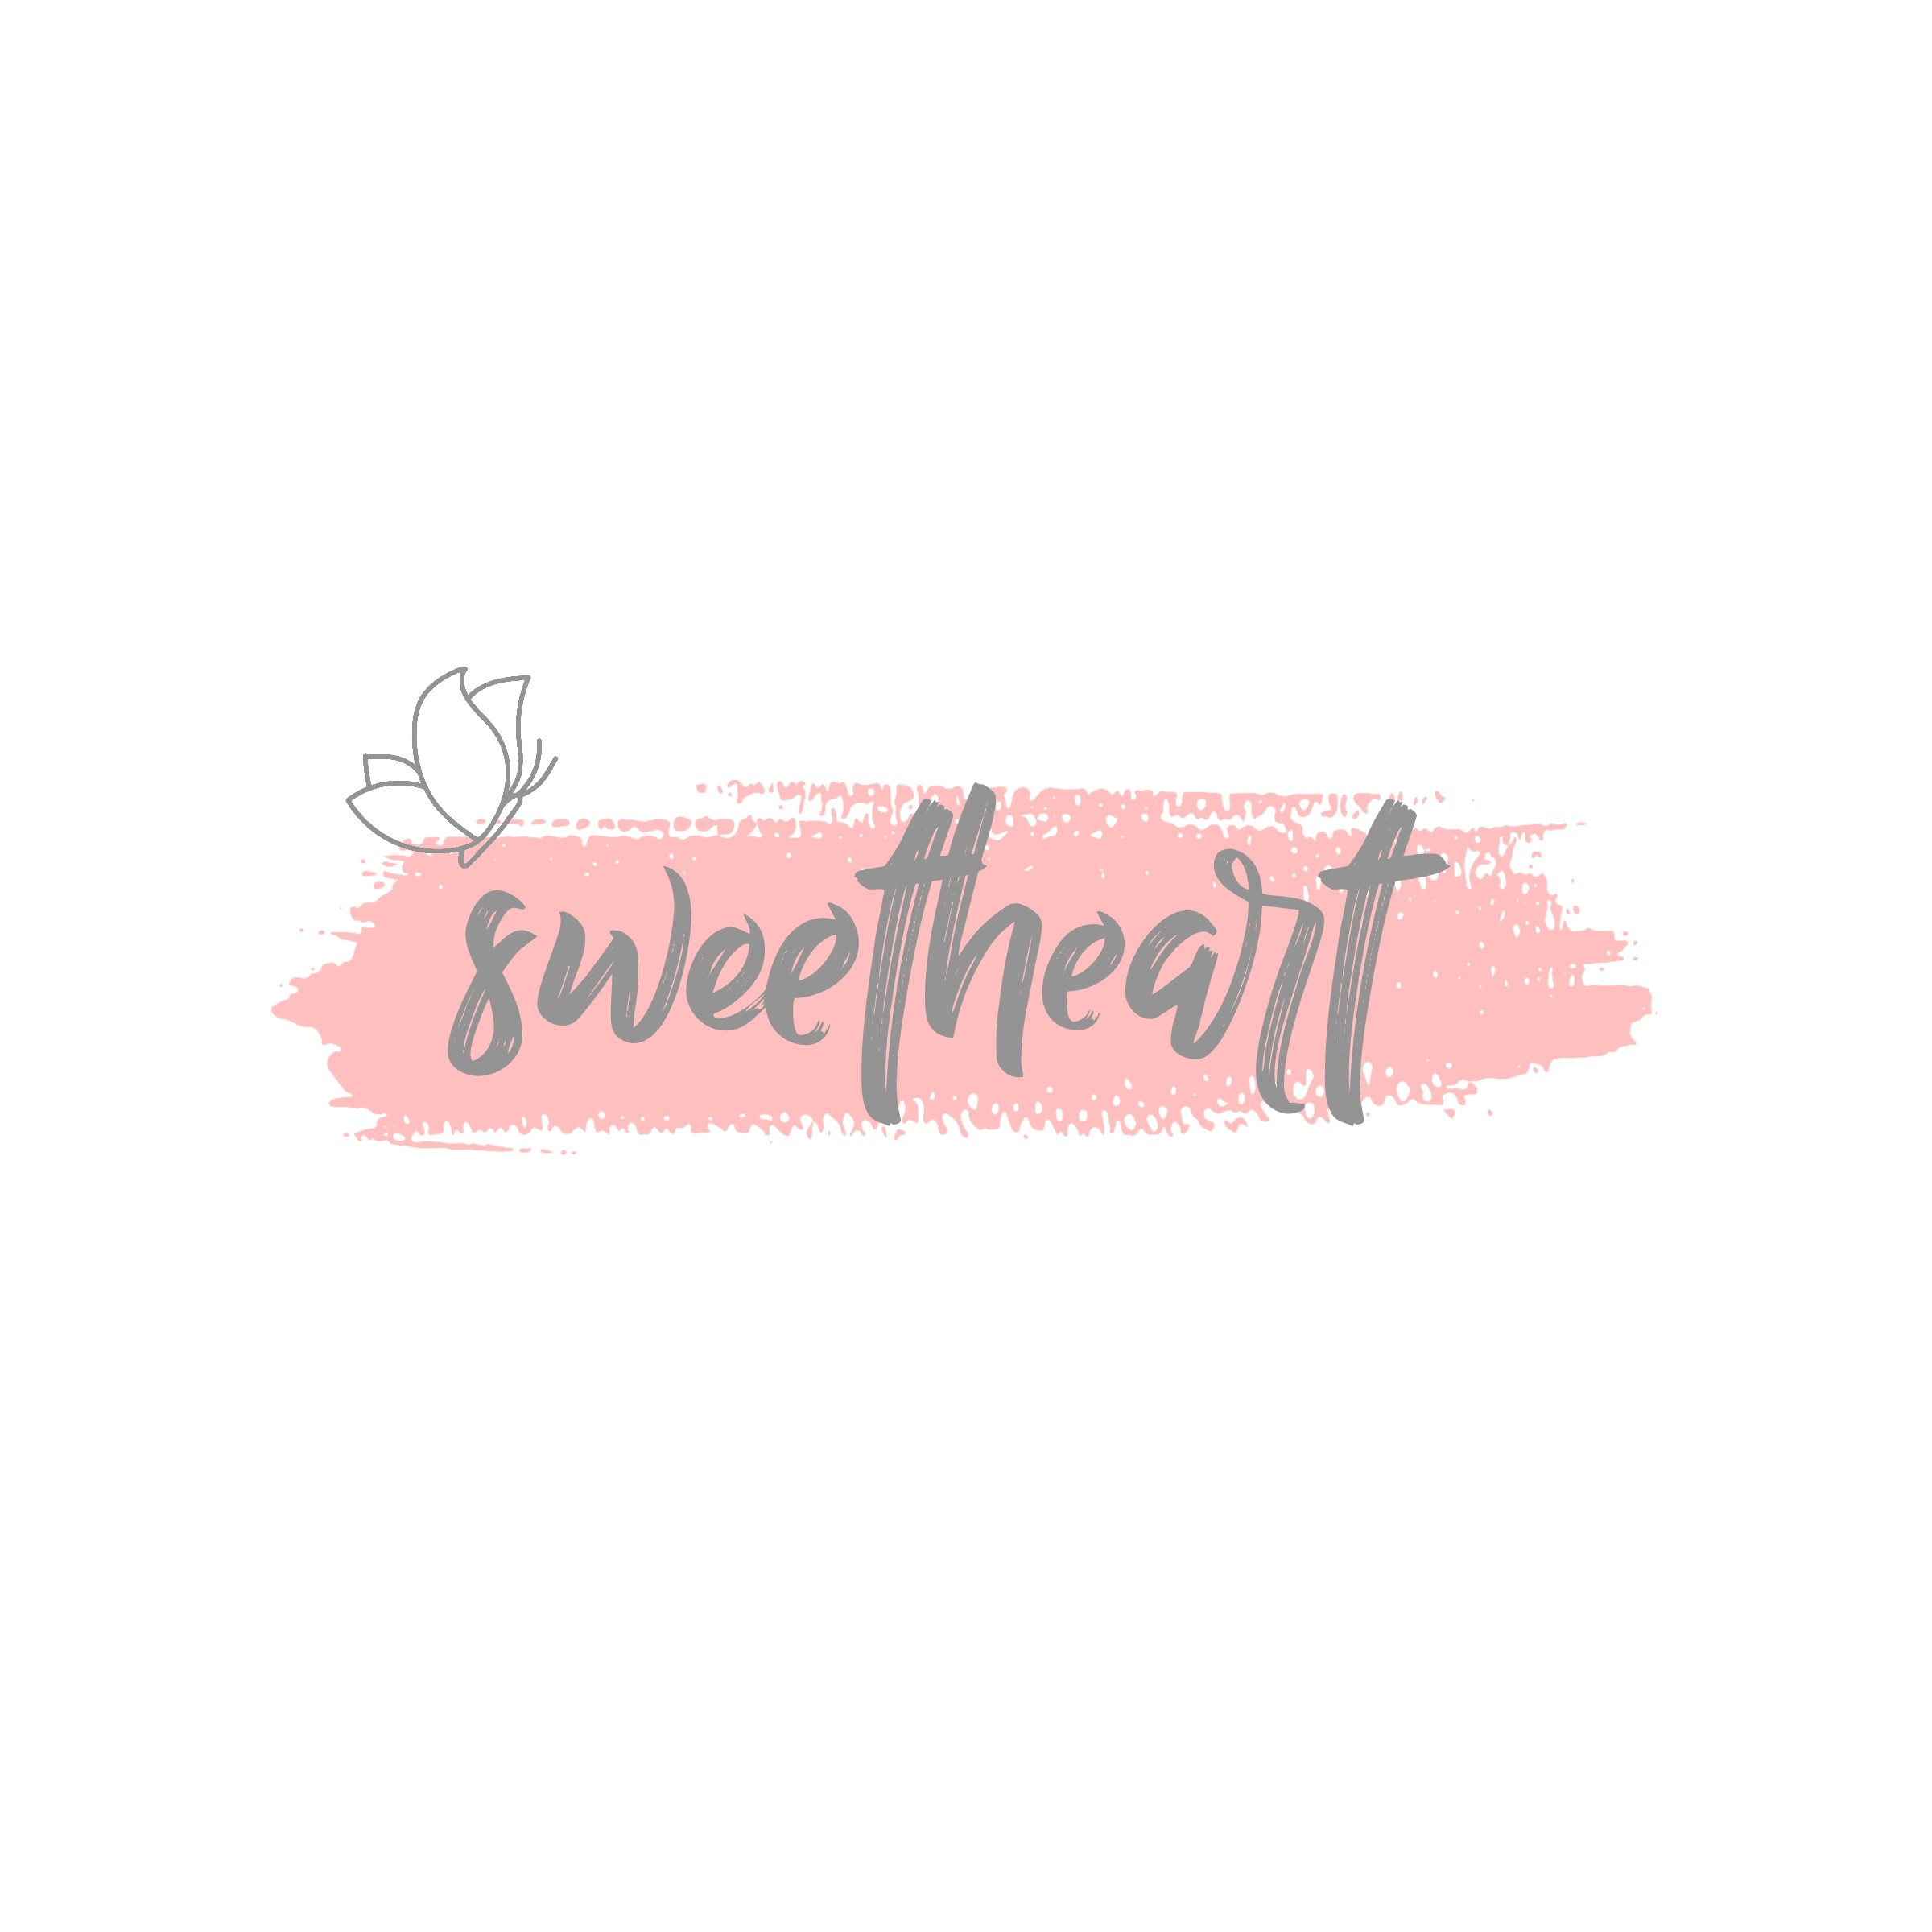 sweetheart